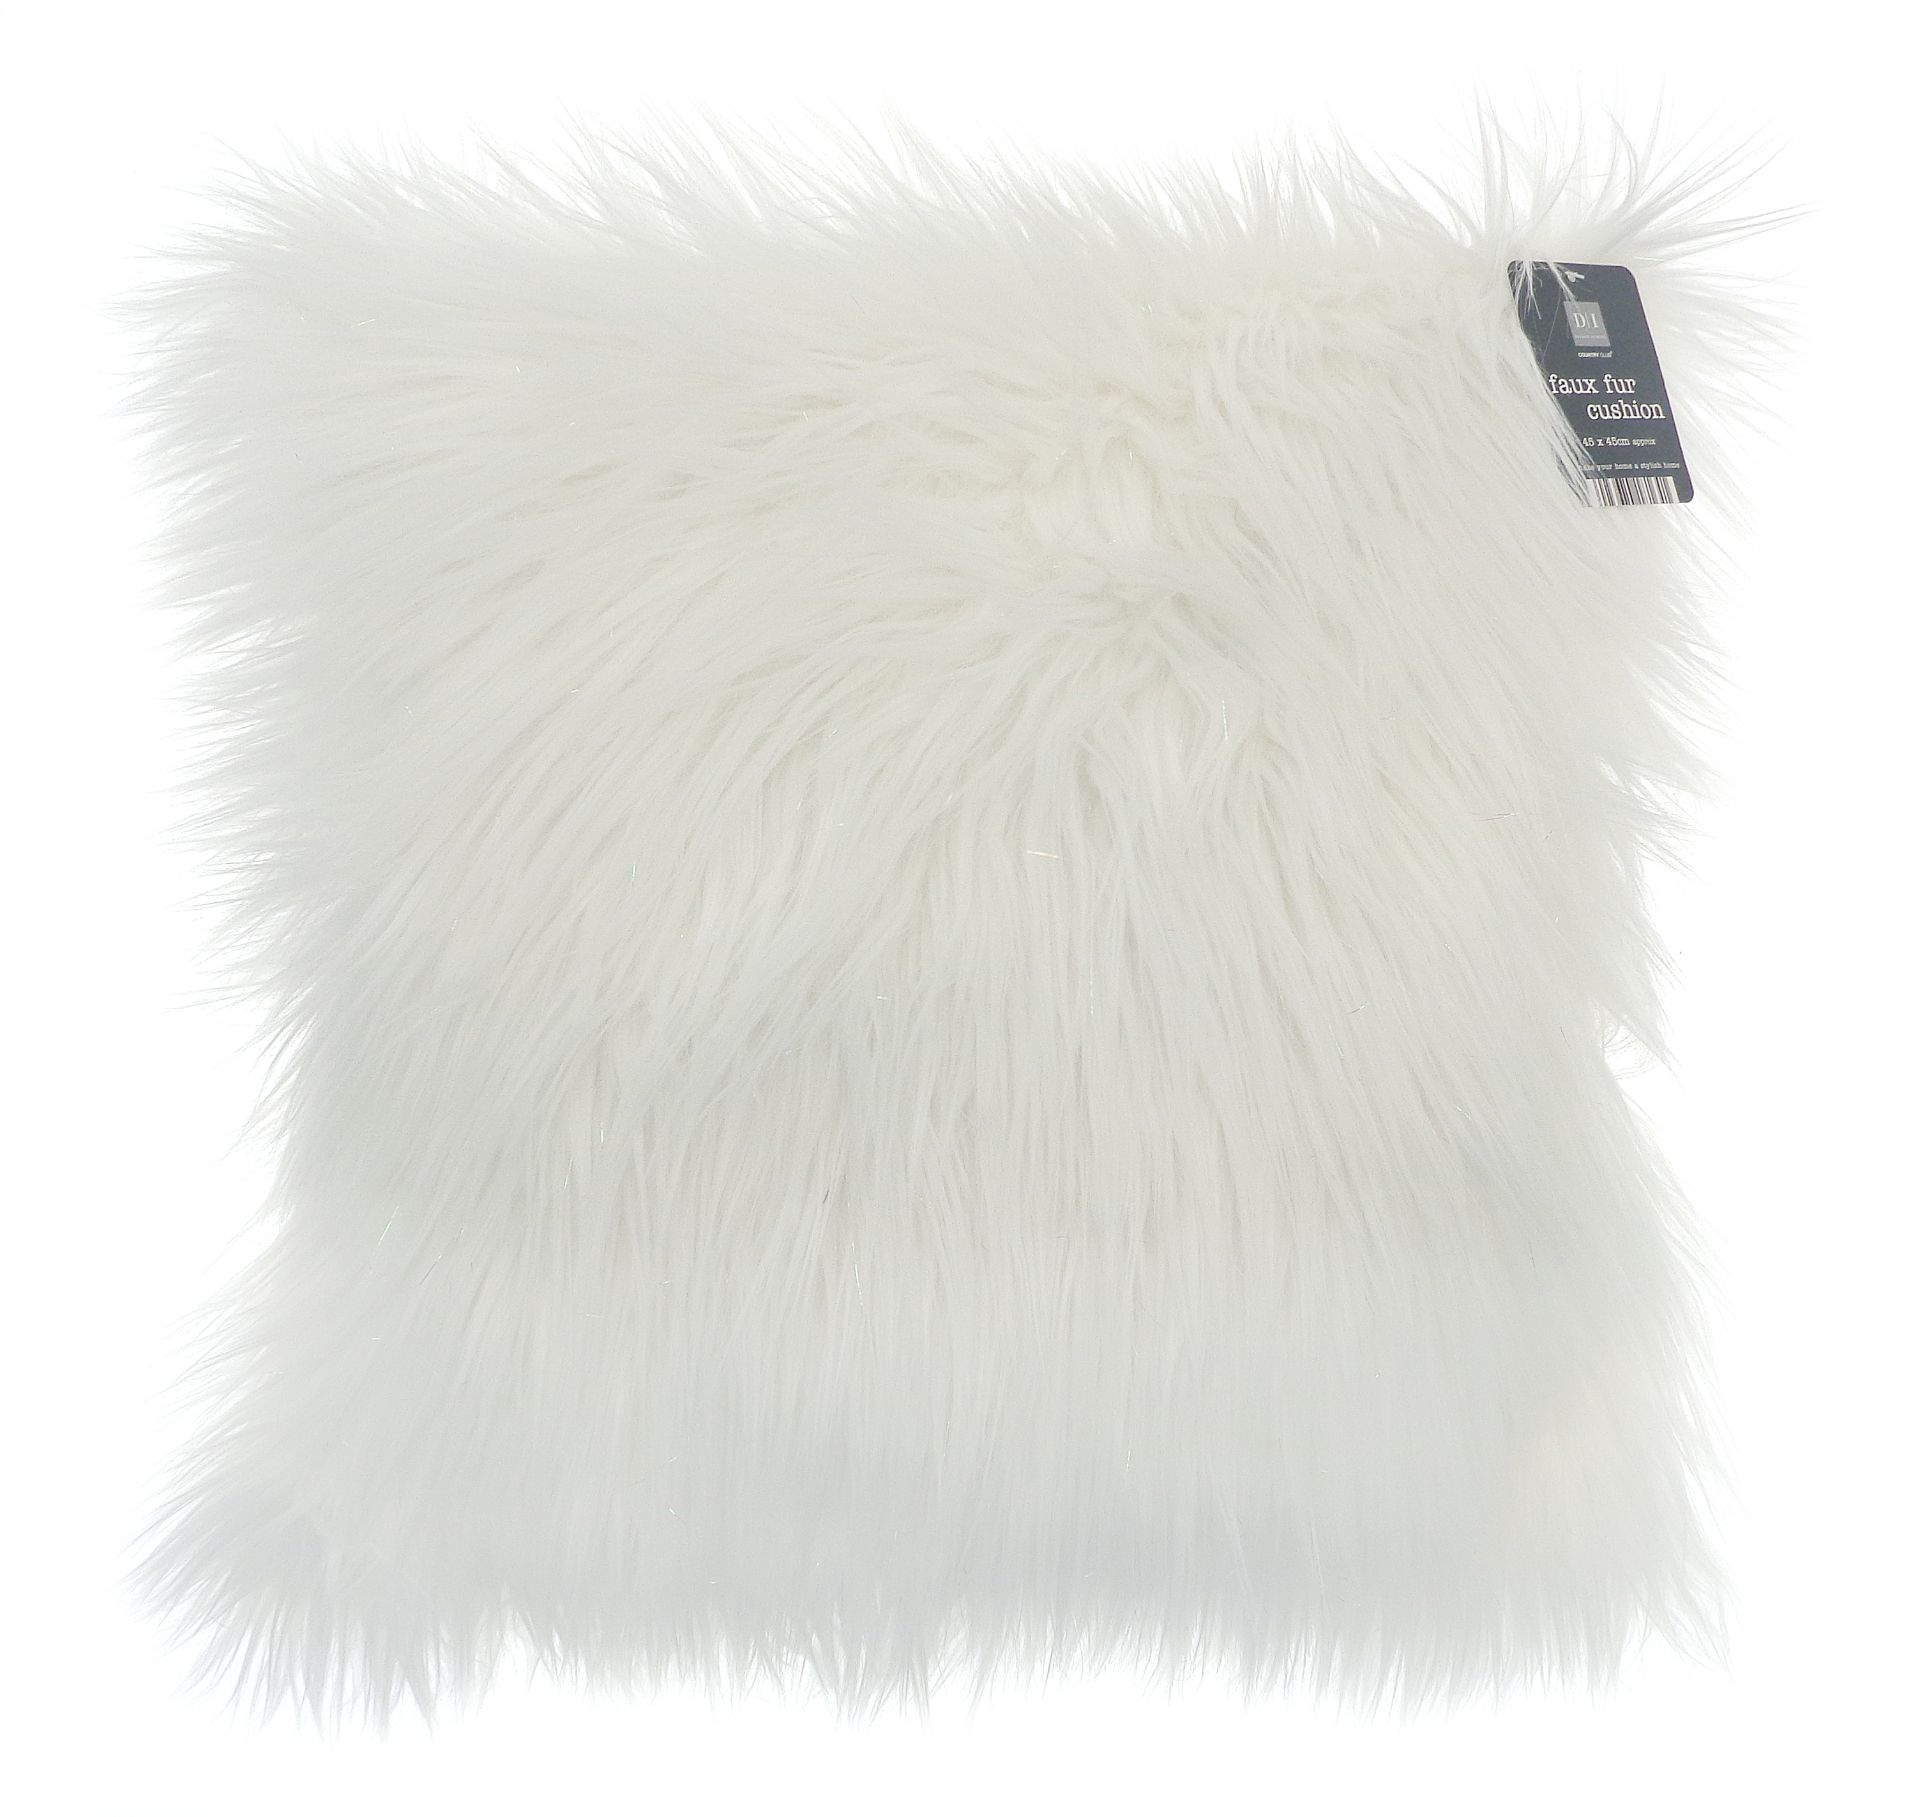 New 45cm Fluffy White Pillow